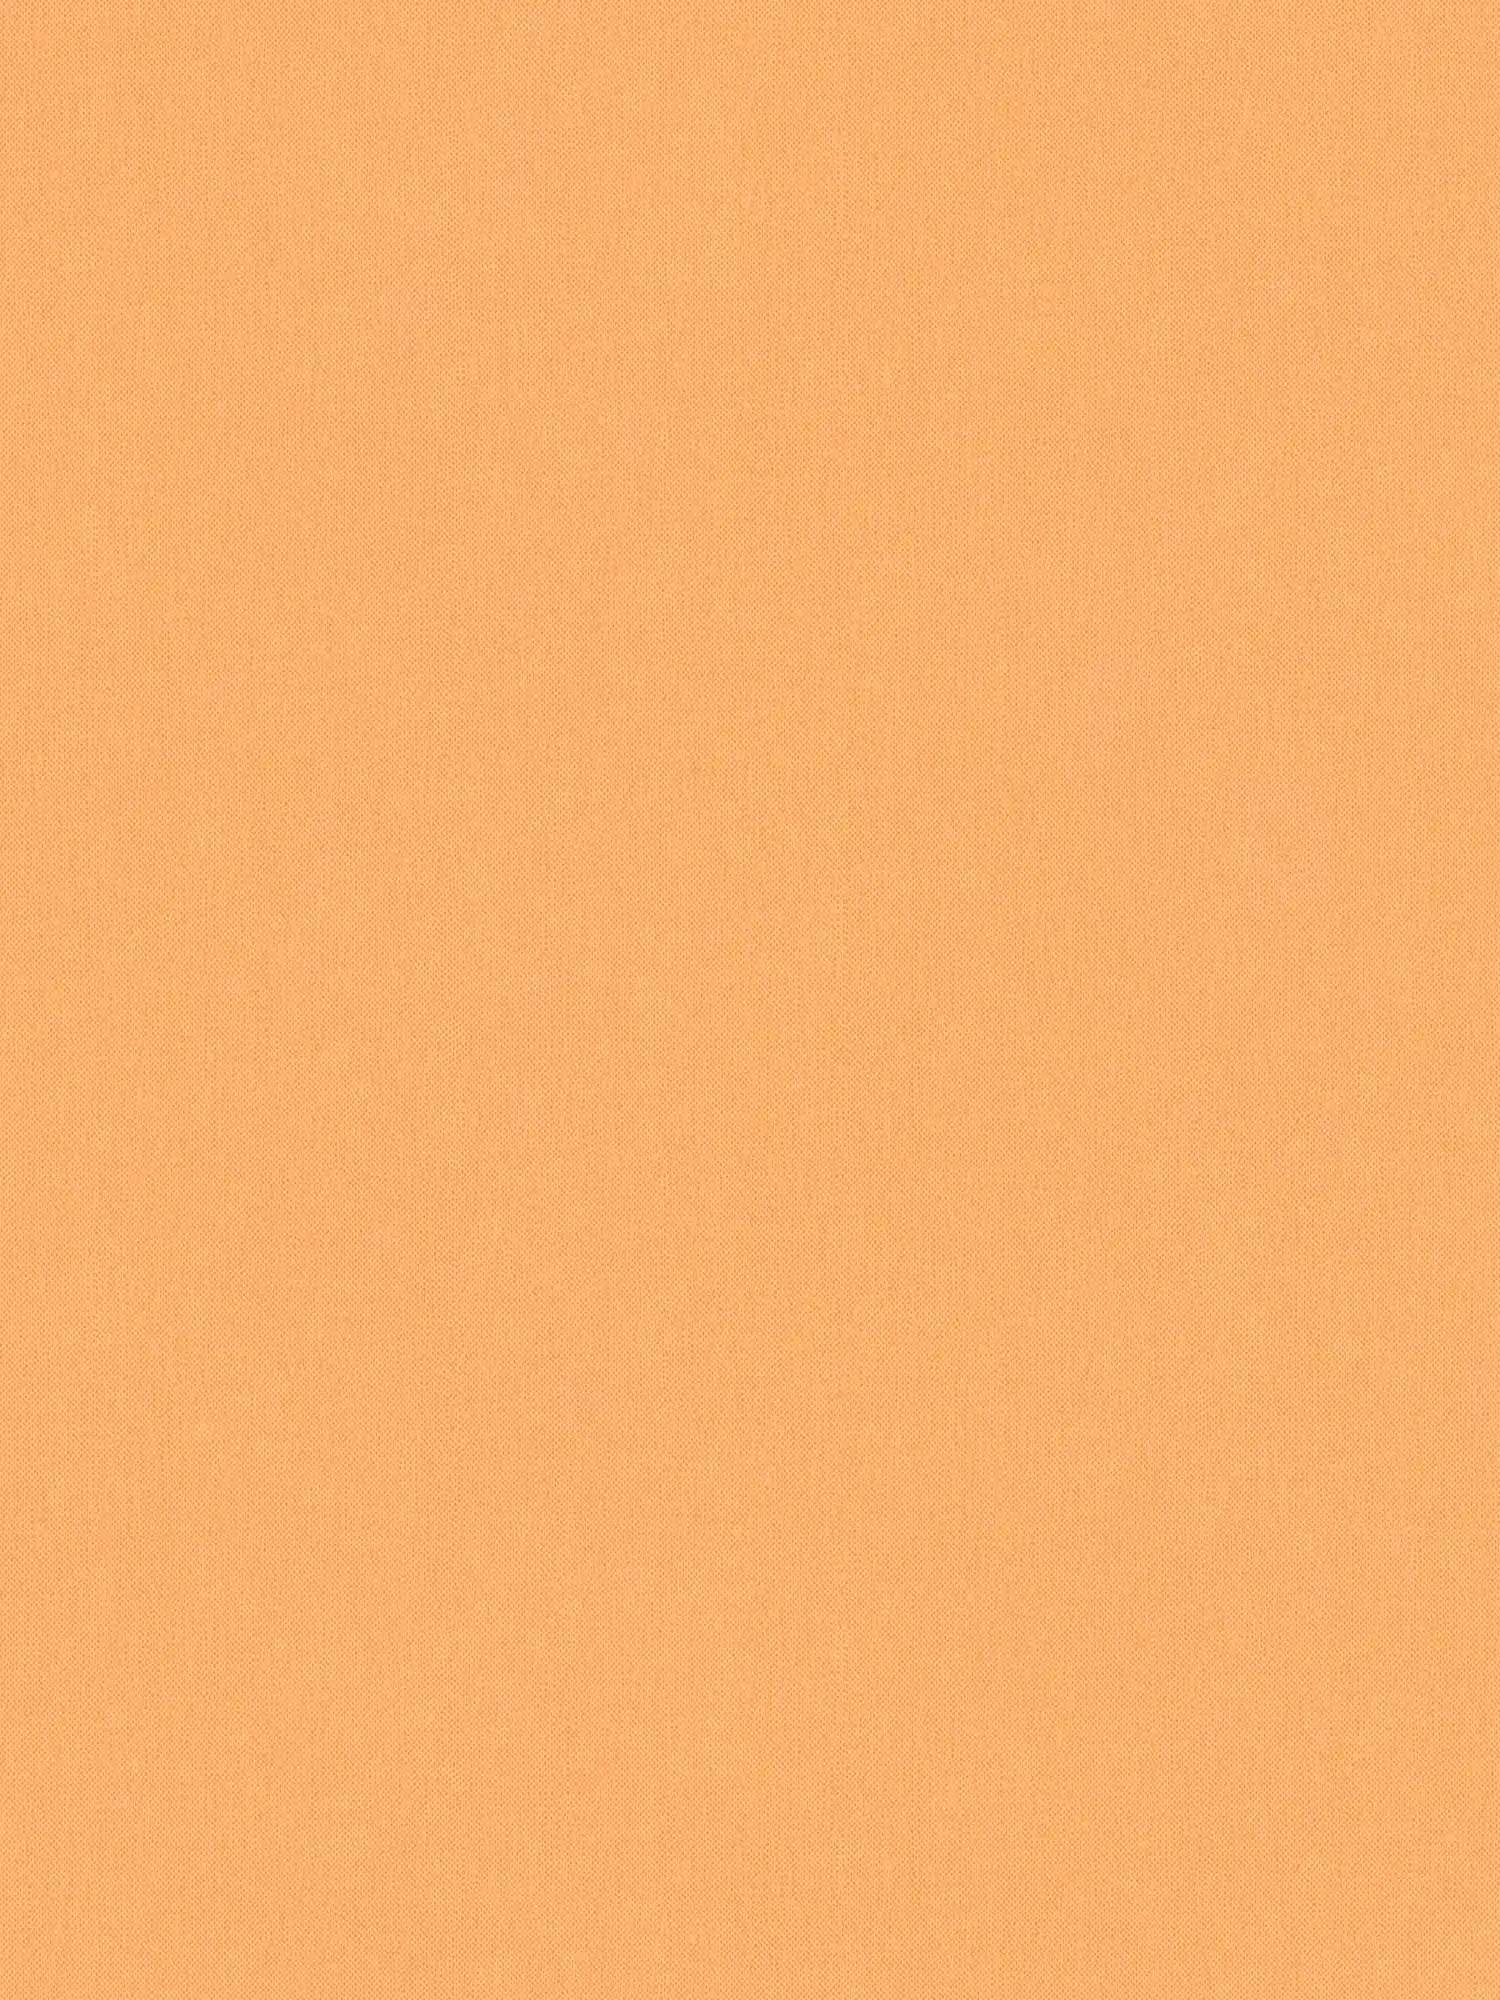 behang oranje pastel & mat met linnenlook structuur - oranje
